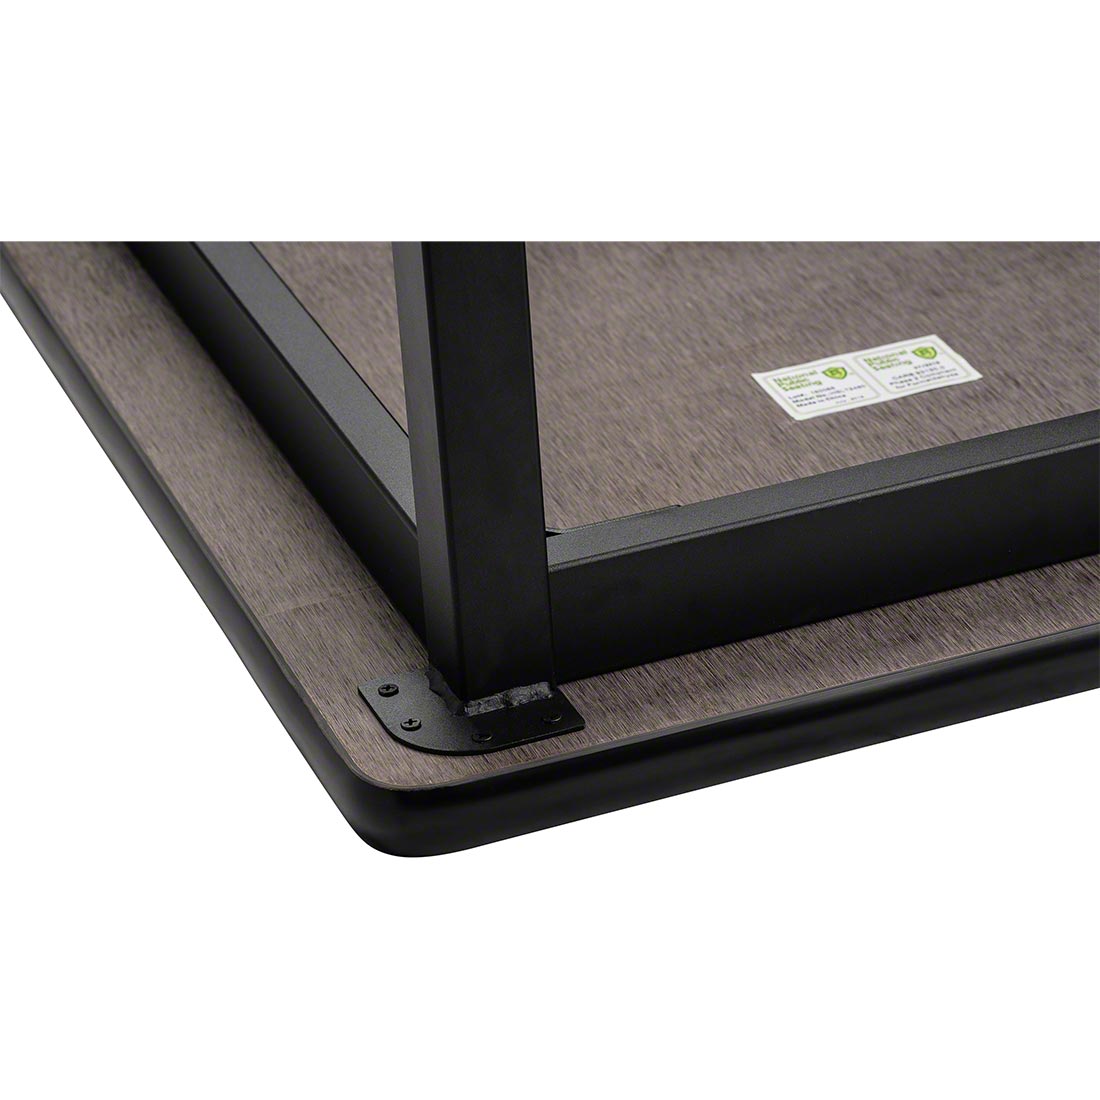 NPS Heavy Duty Steel Table, Black Frame, 48 x 60 x 30, Whiteboard Top